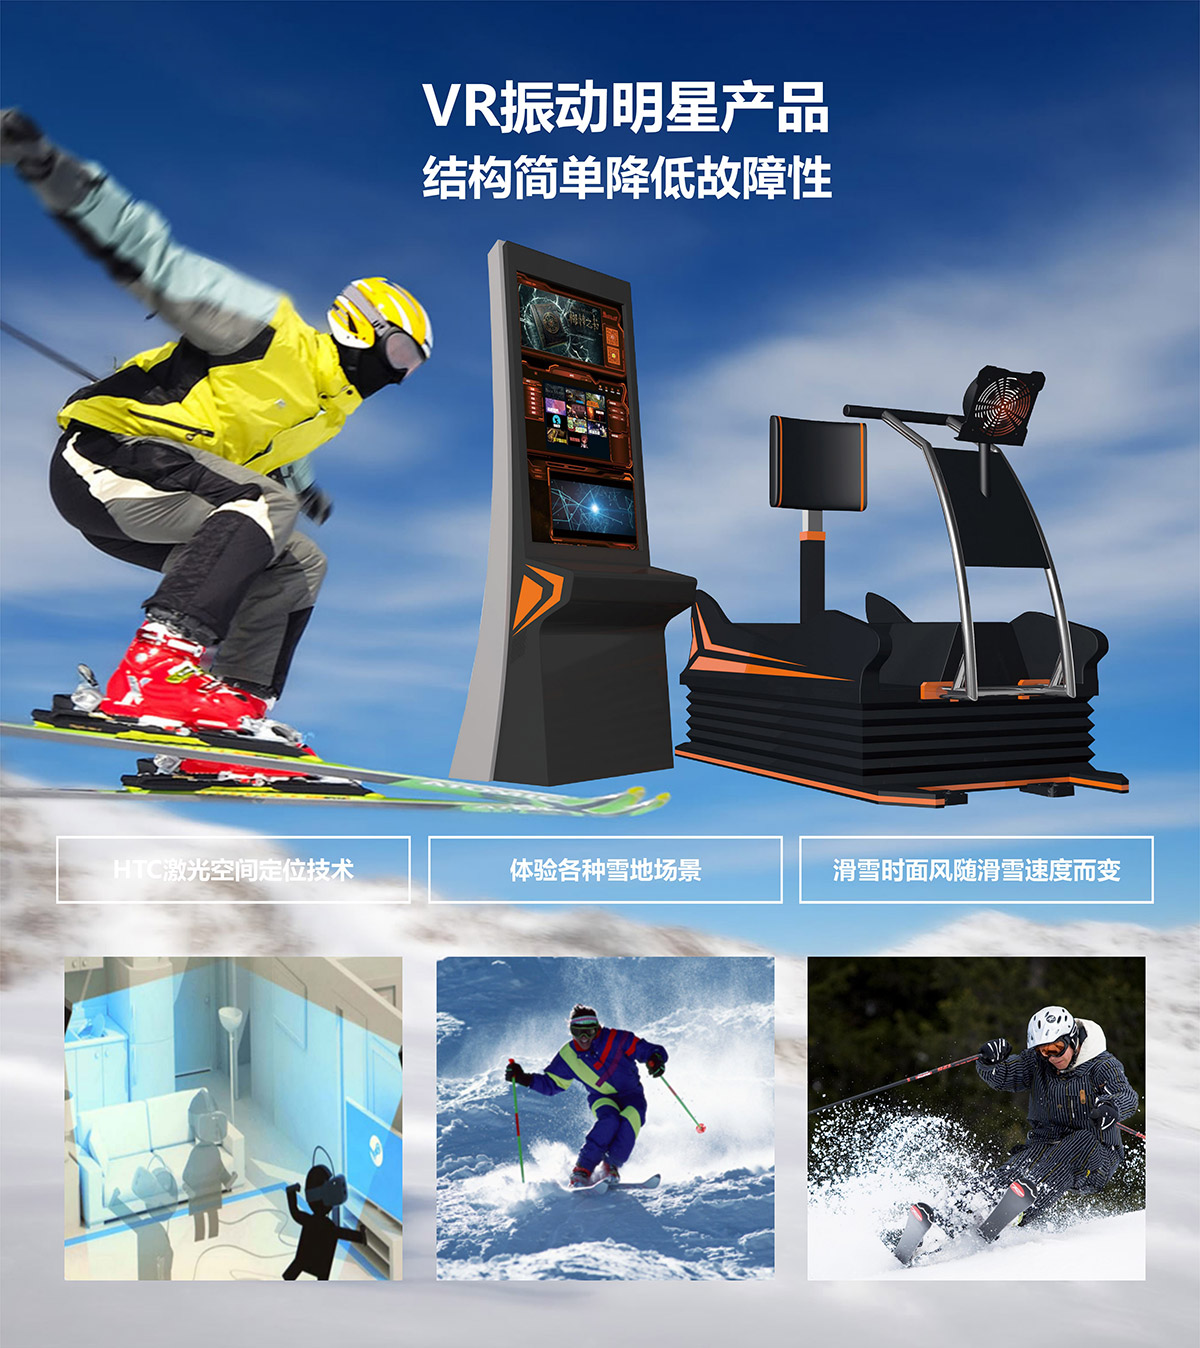 奇影幻境VR明星产品模拟滑雪.jpg